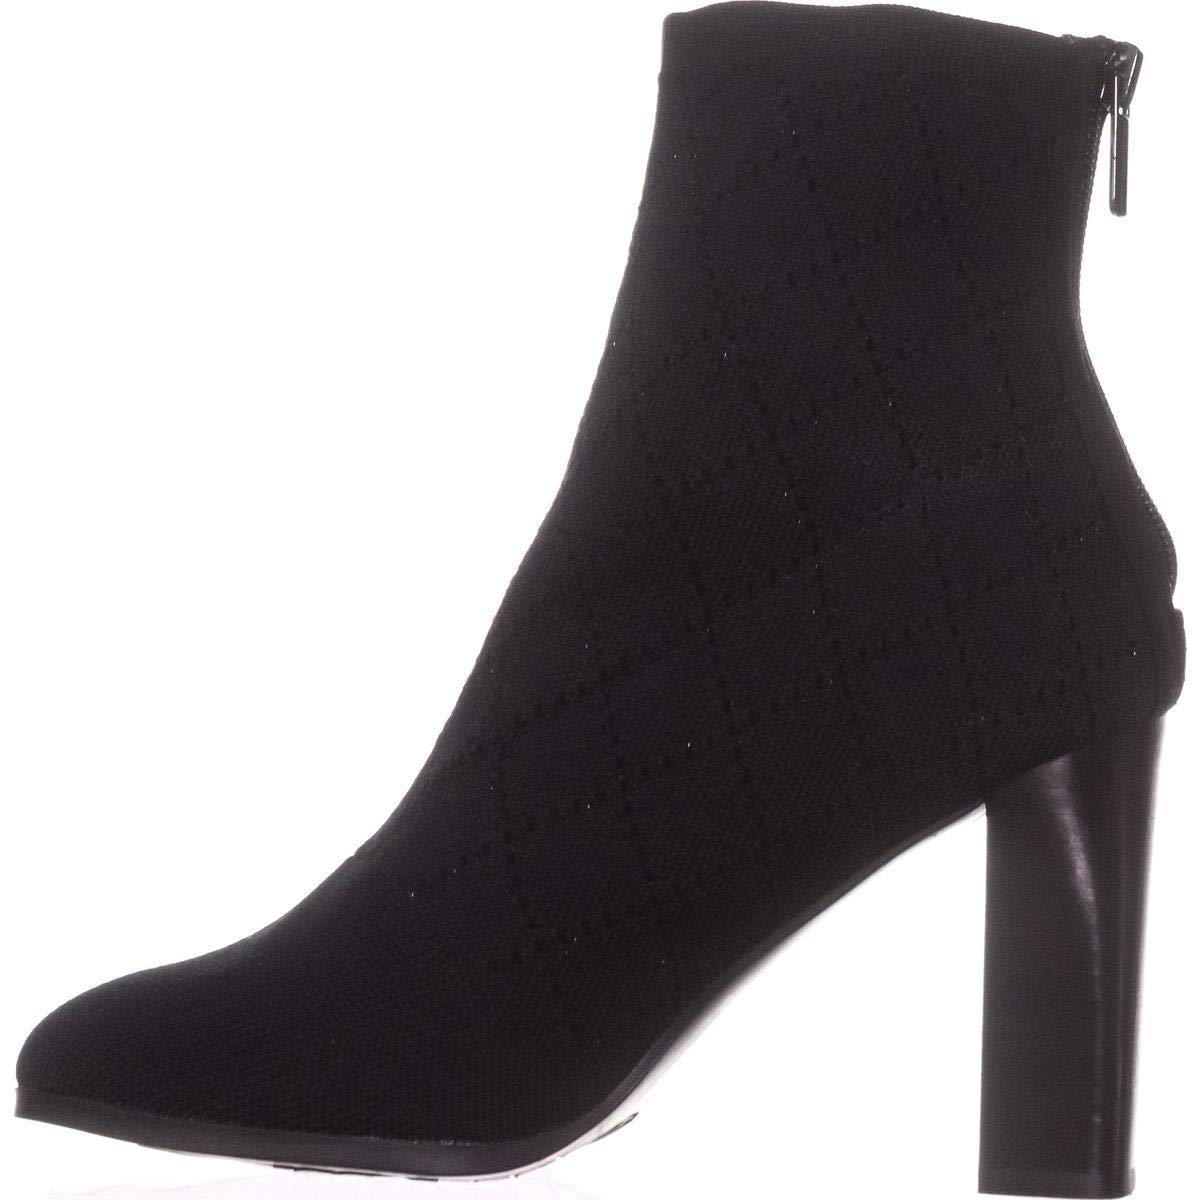 Impo Womens Oak Knit Ankle Booties, Black, Size 9.5 632576722835 | eBay